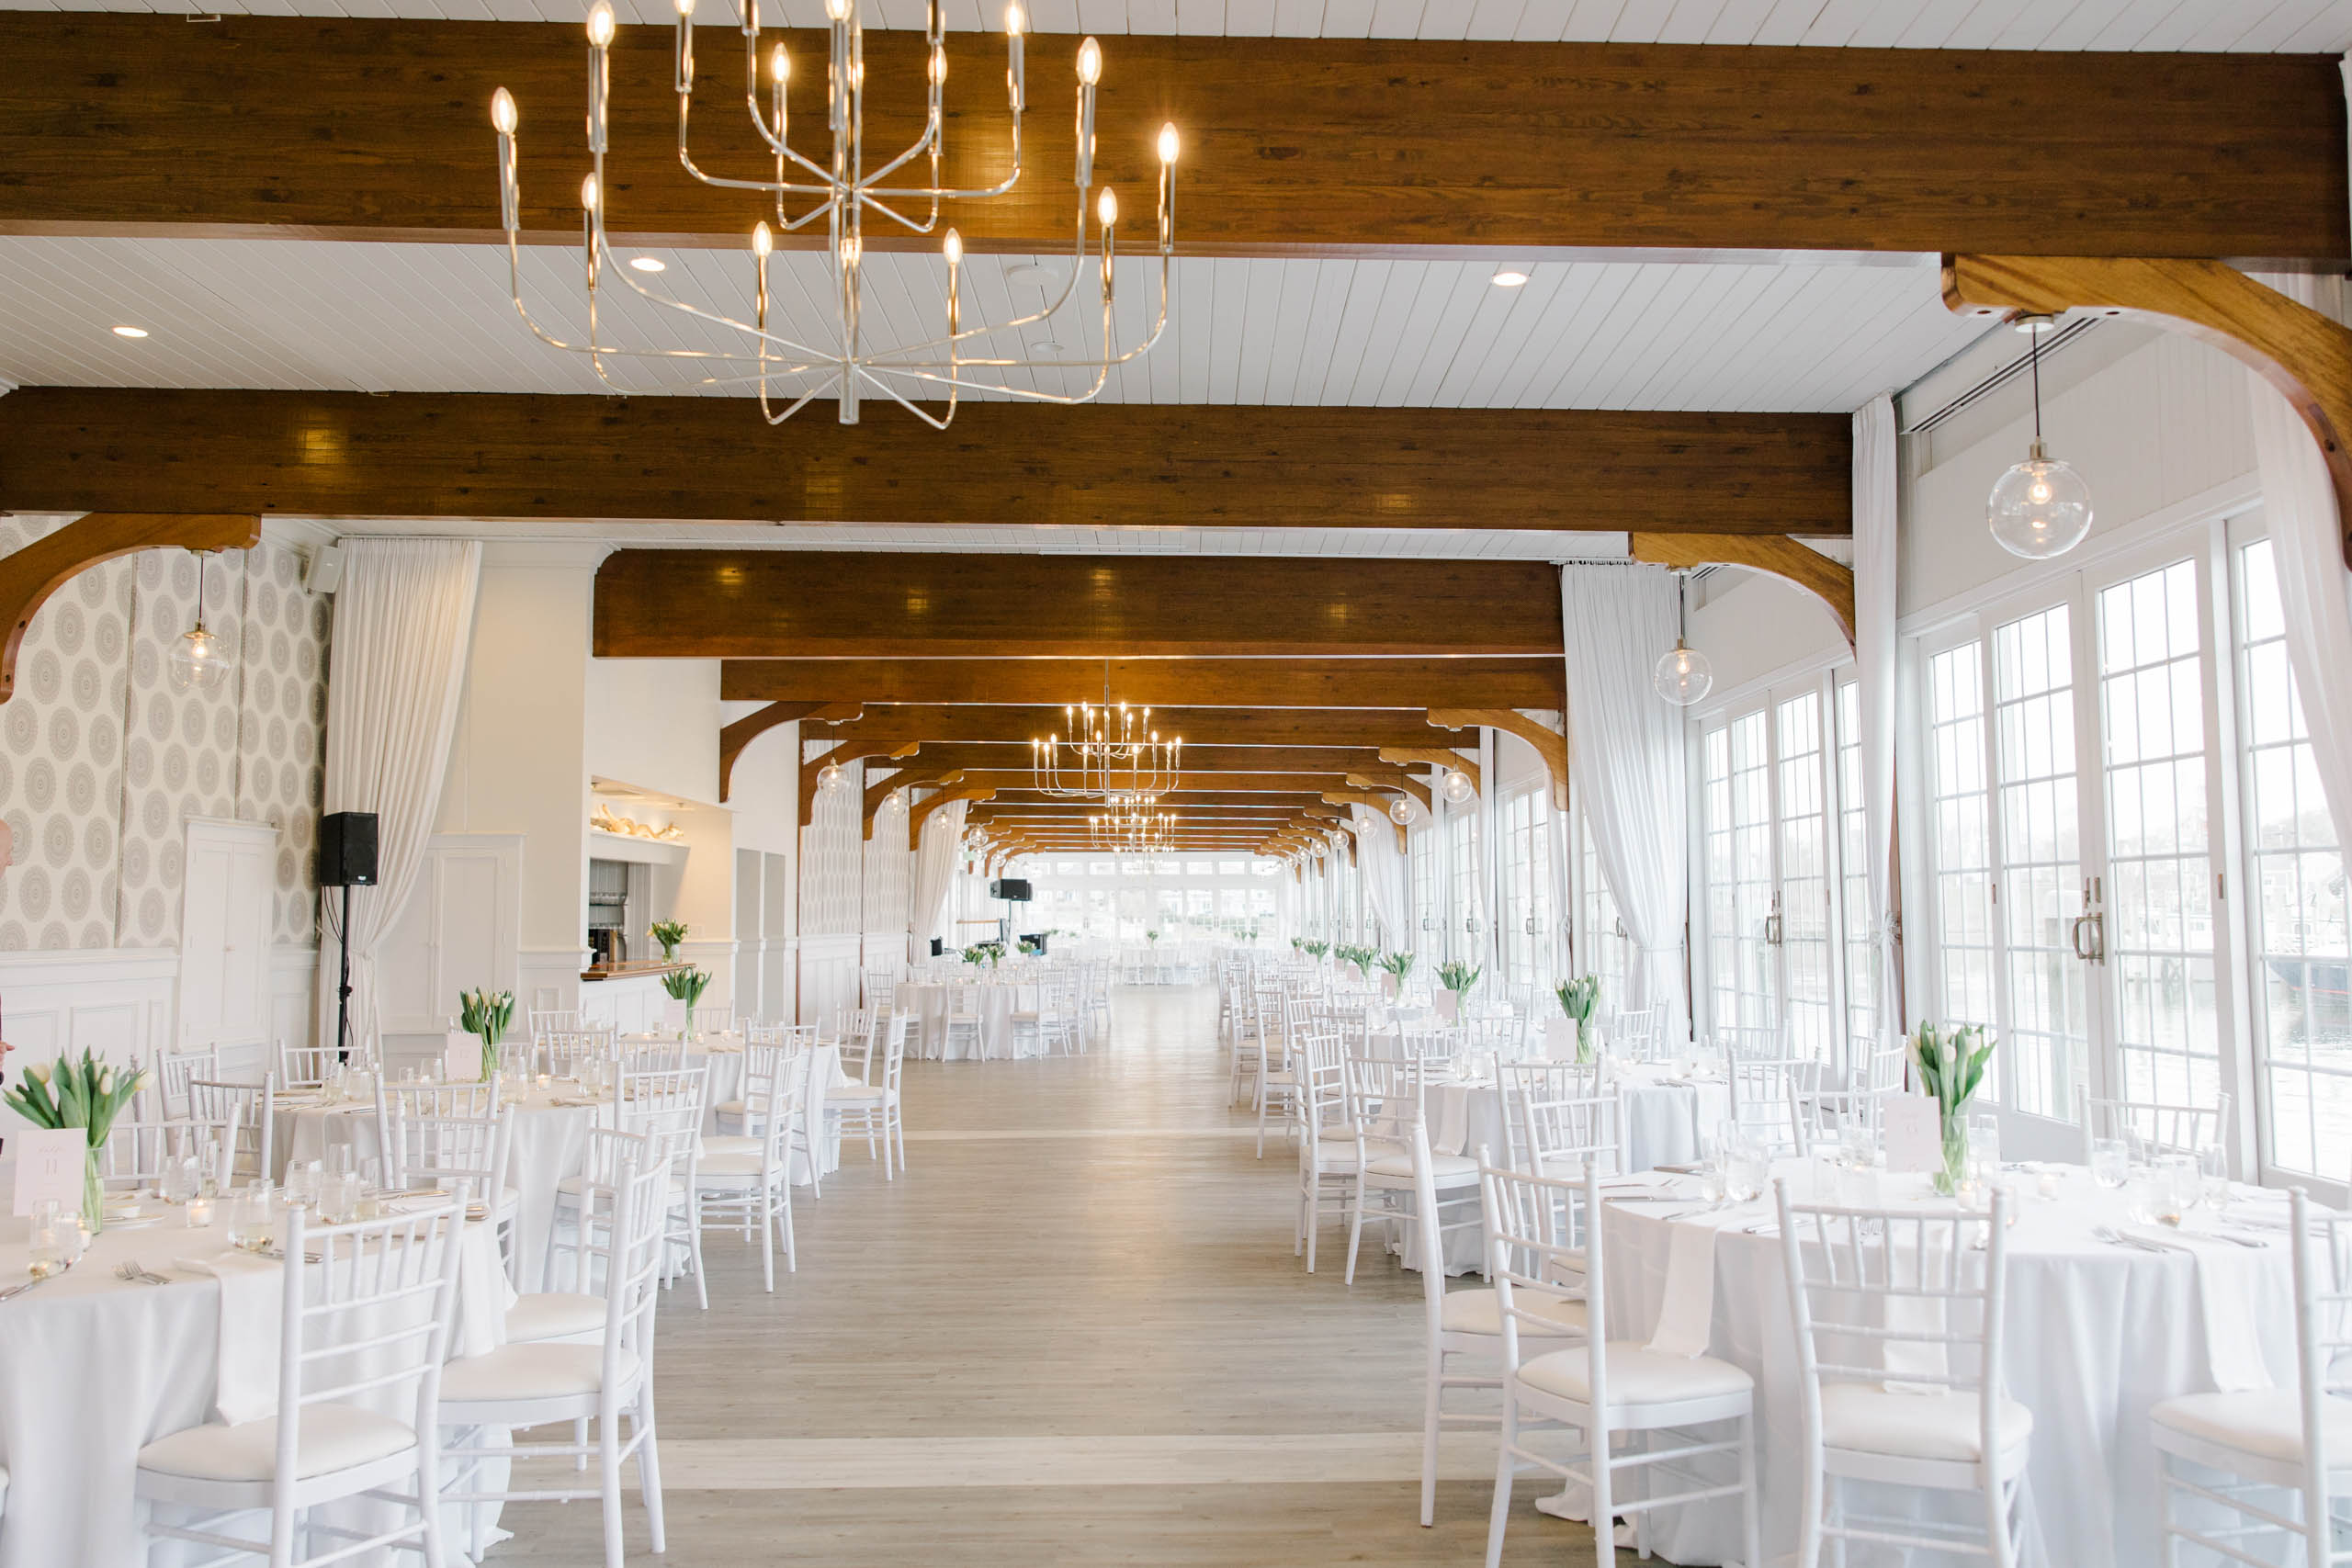 Interior of a wedding venue.